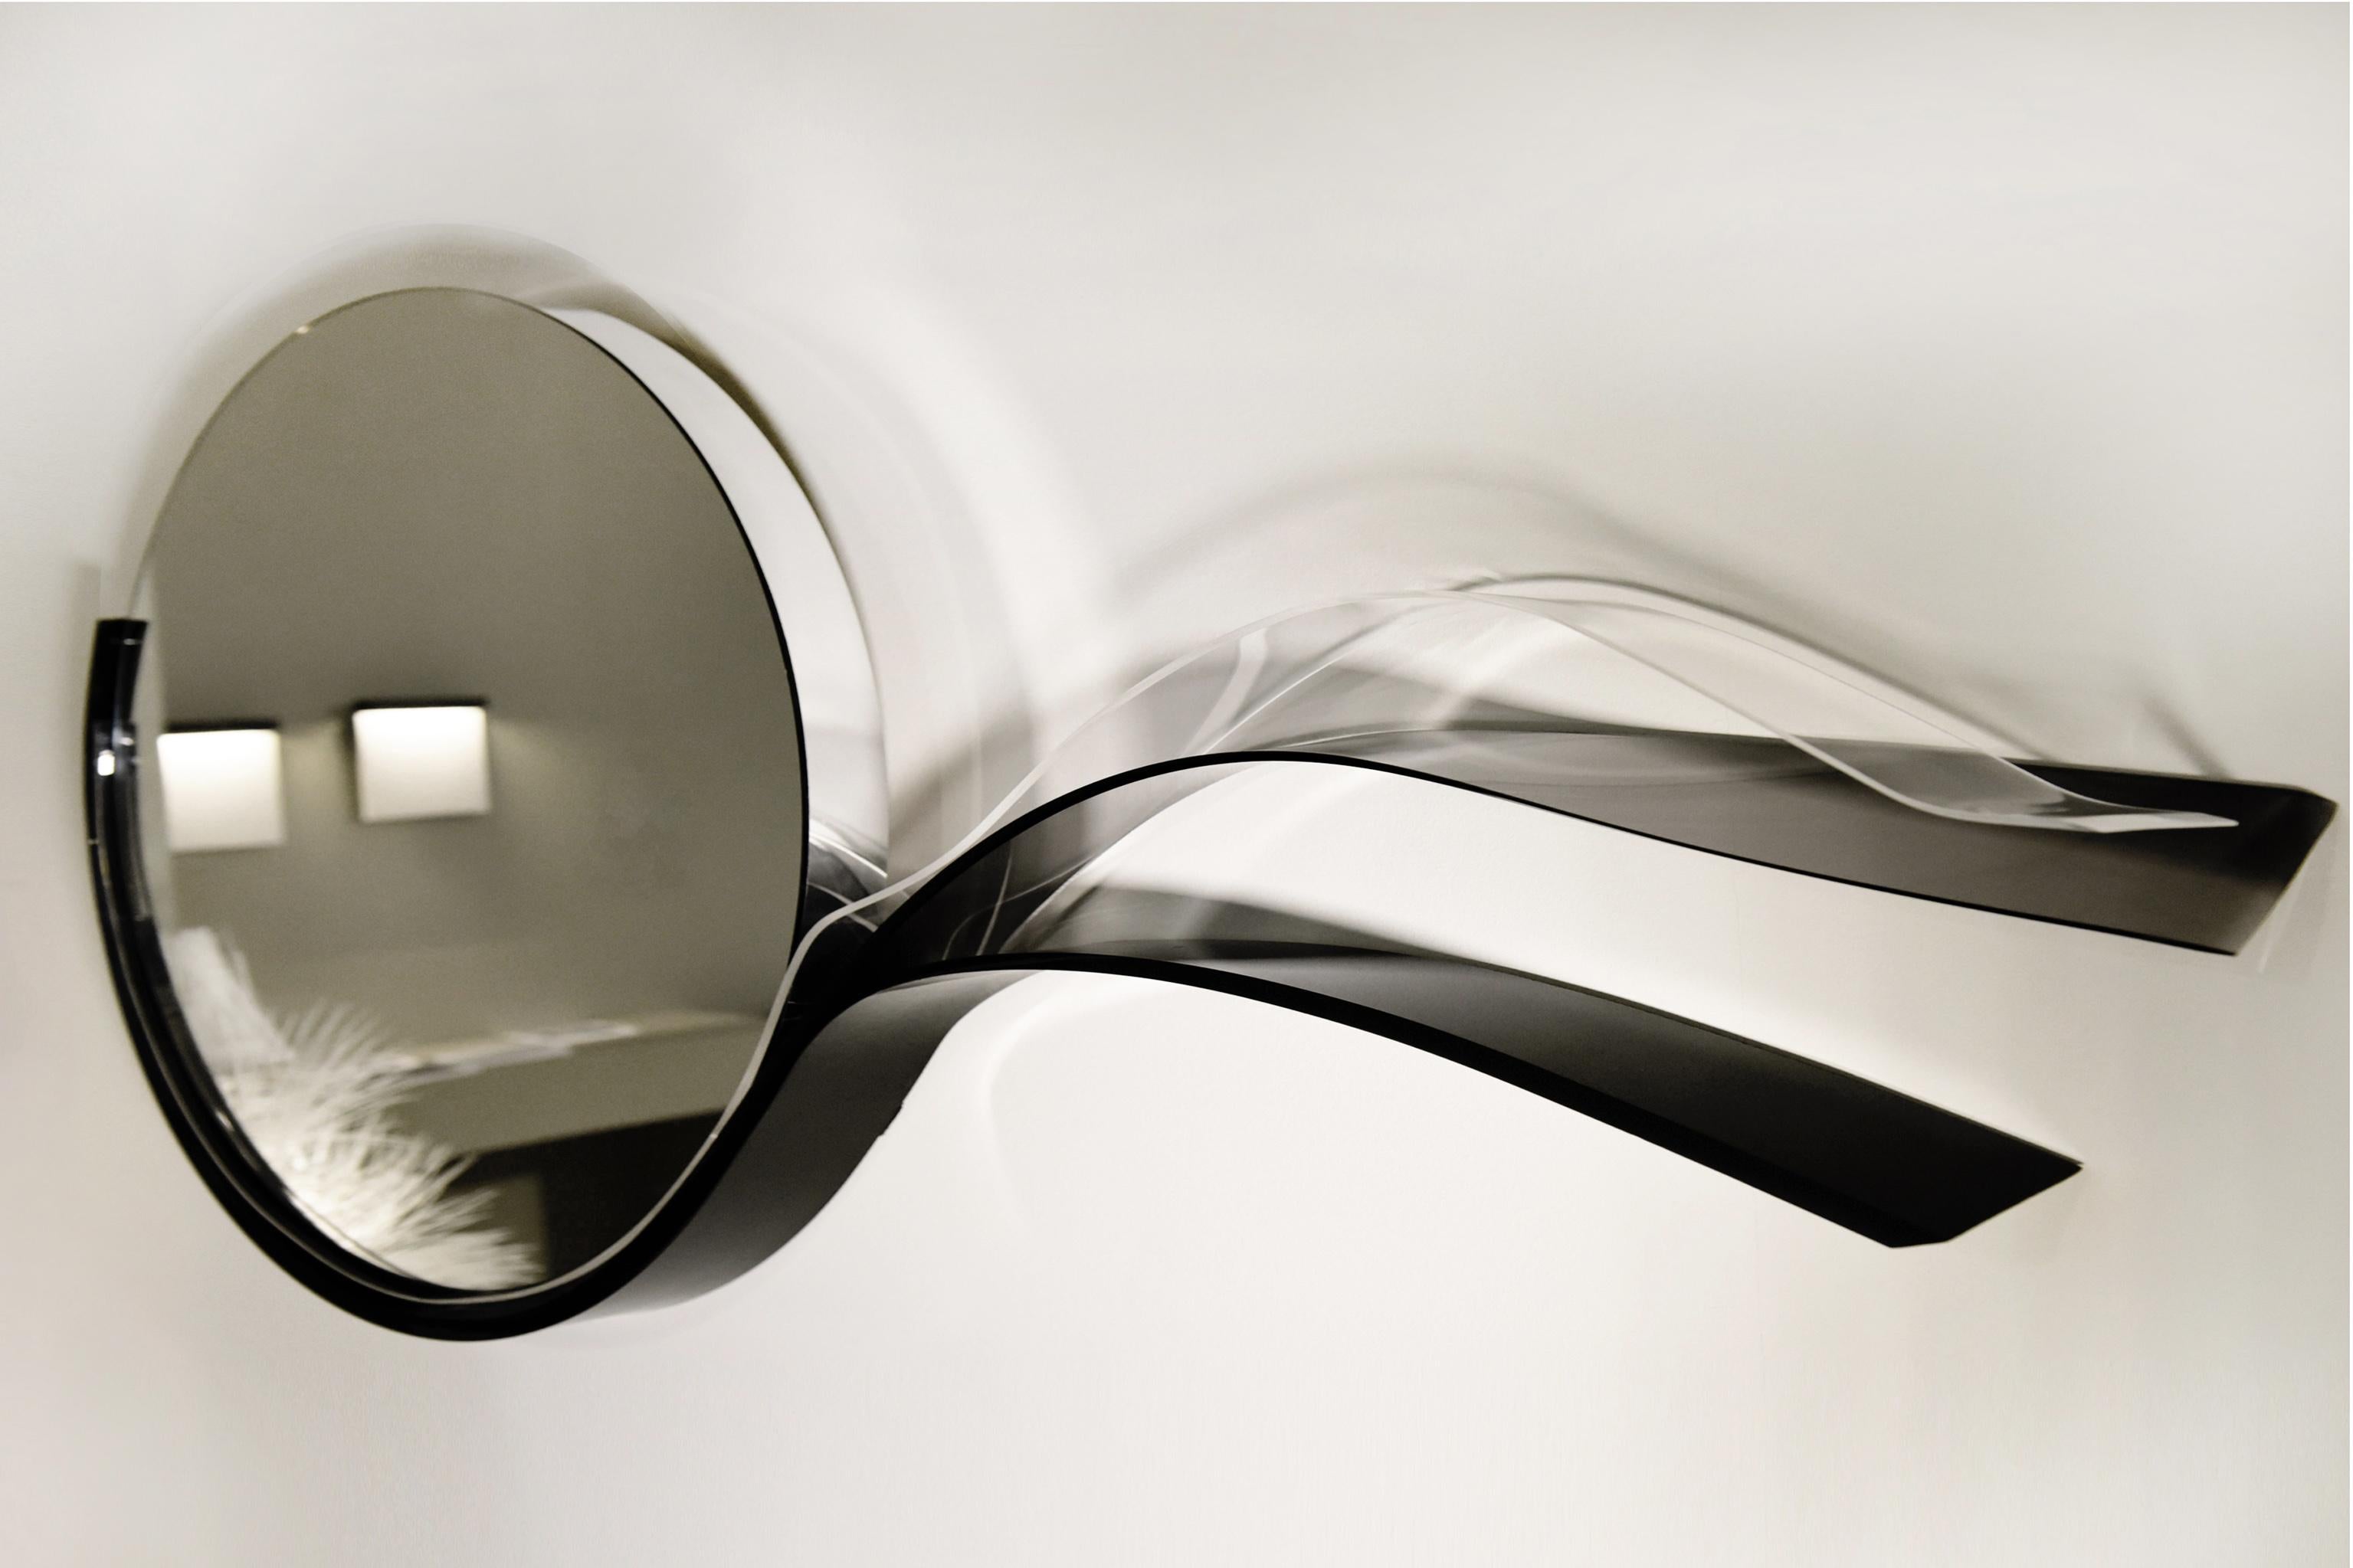 Wave Mirror est un miroir qui fait partie de la collection Black Sea créée par l'artiste designer Raoul Gilioli. L'artiste s'est inspiré de la mer (thème très présent dans toutes les œuvres de Gilioli) la nuit avec ses reflets et sa magie.
Les